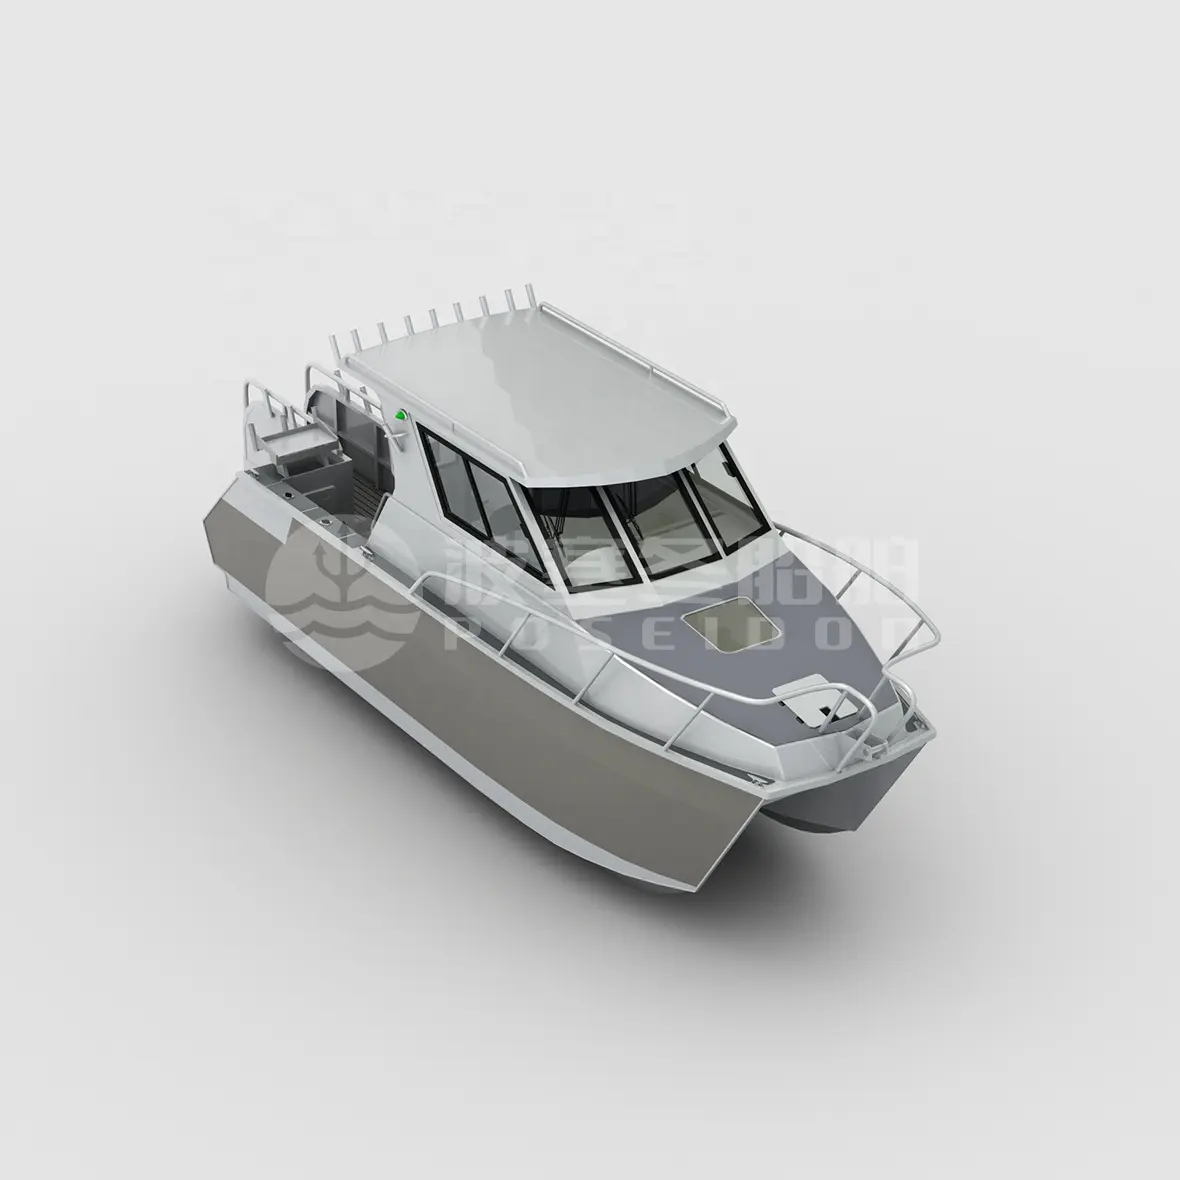 Nouveau 8.8m 29ft De Luxe Bateau à Passagers Double Coques Bateaux En Aluminium Catamaran